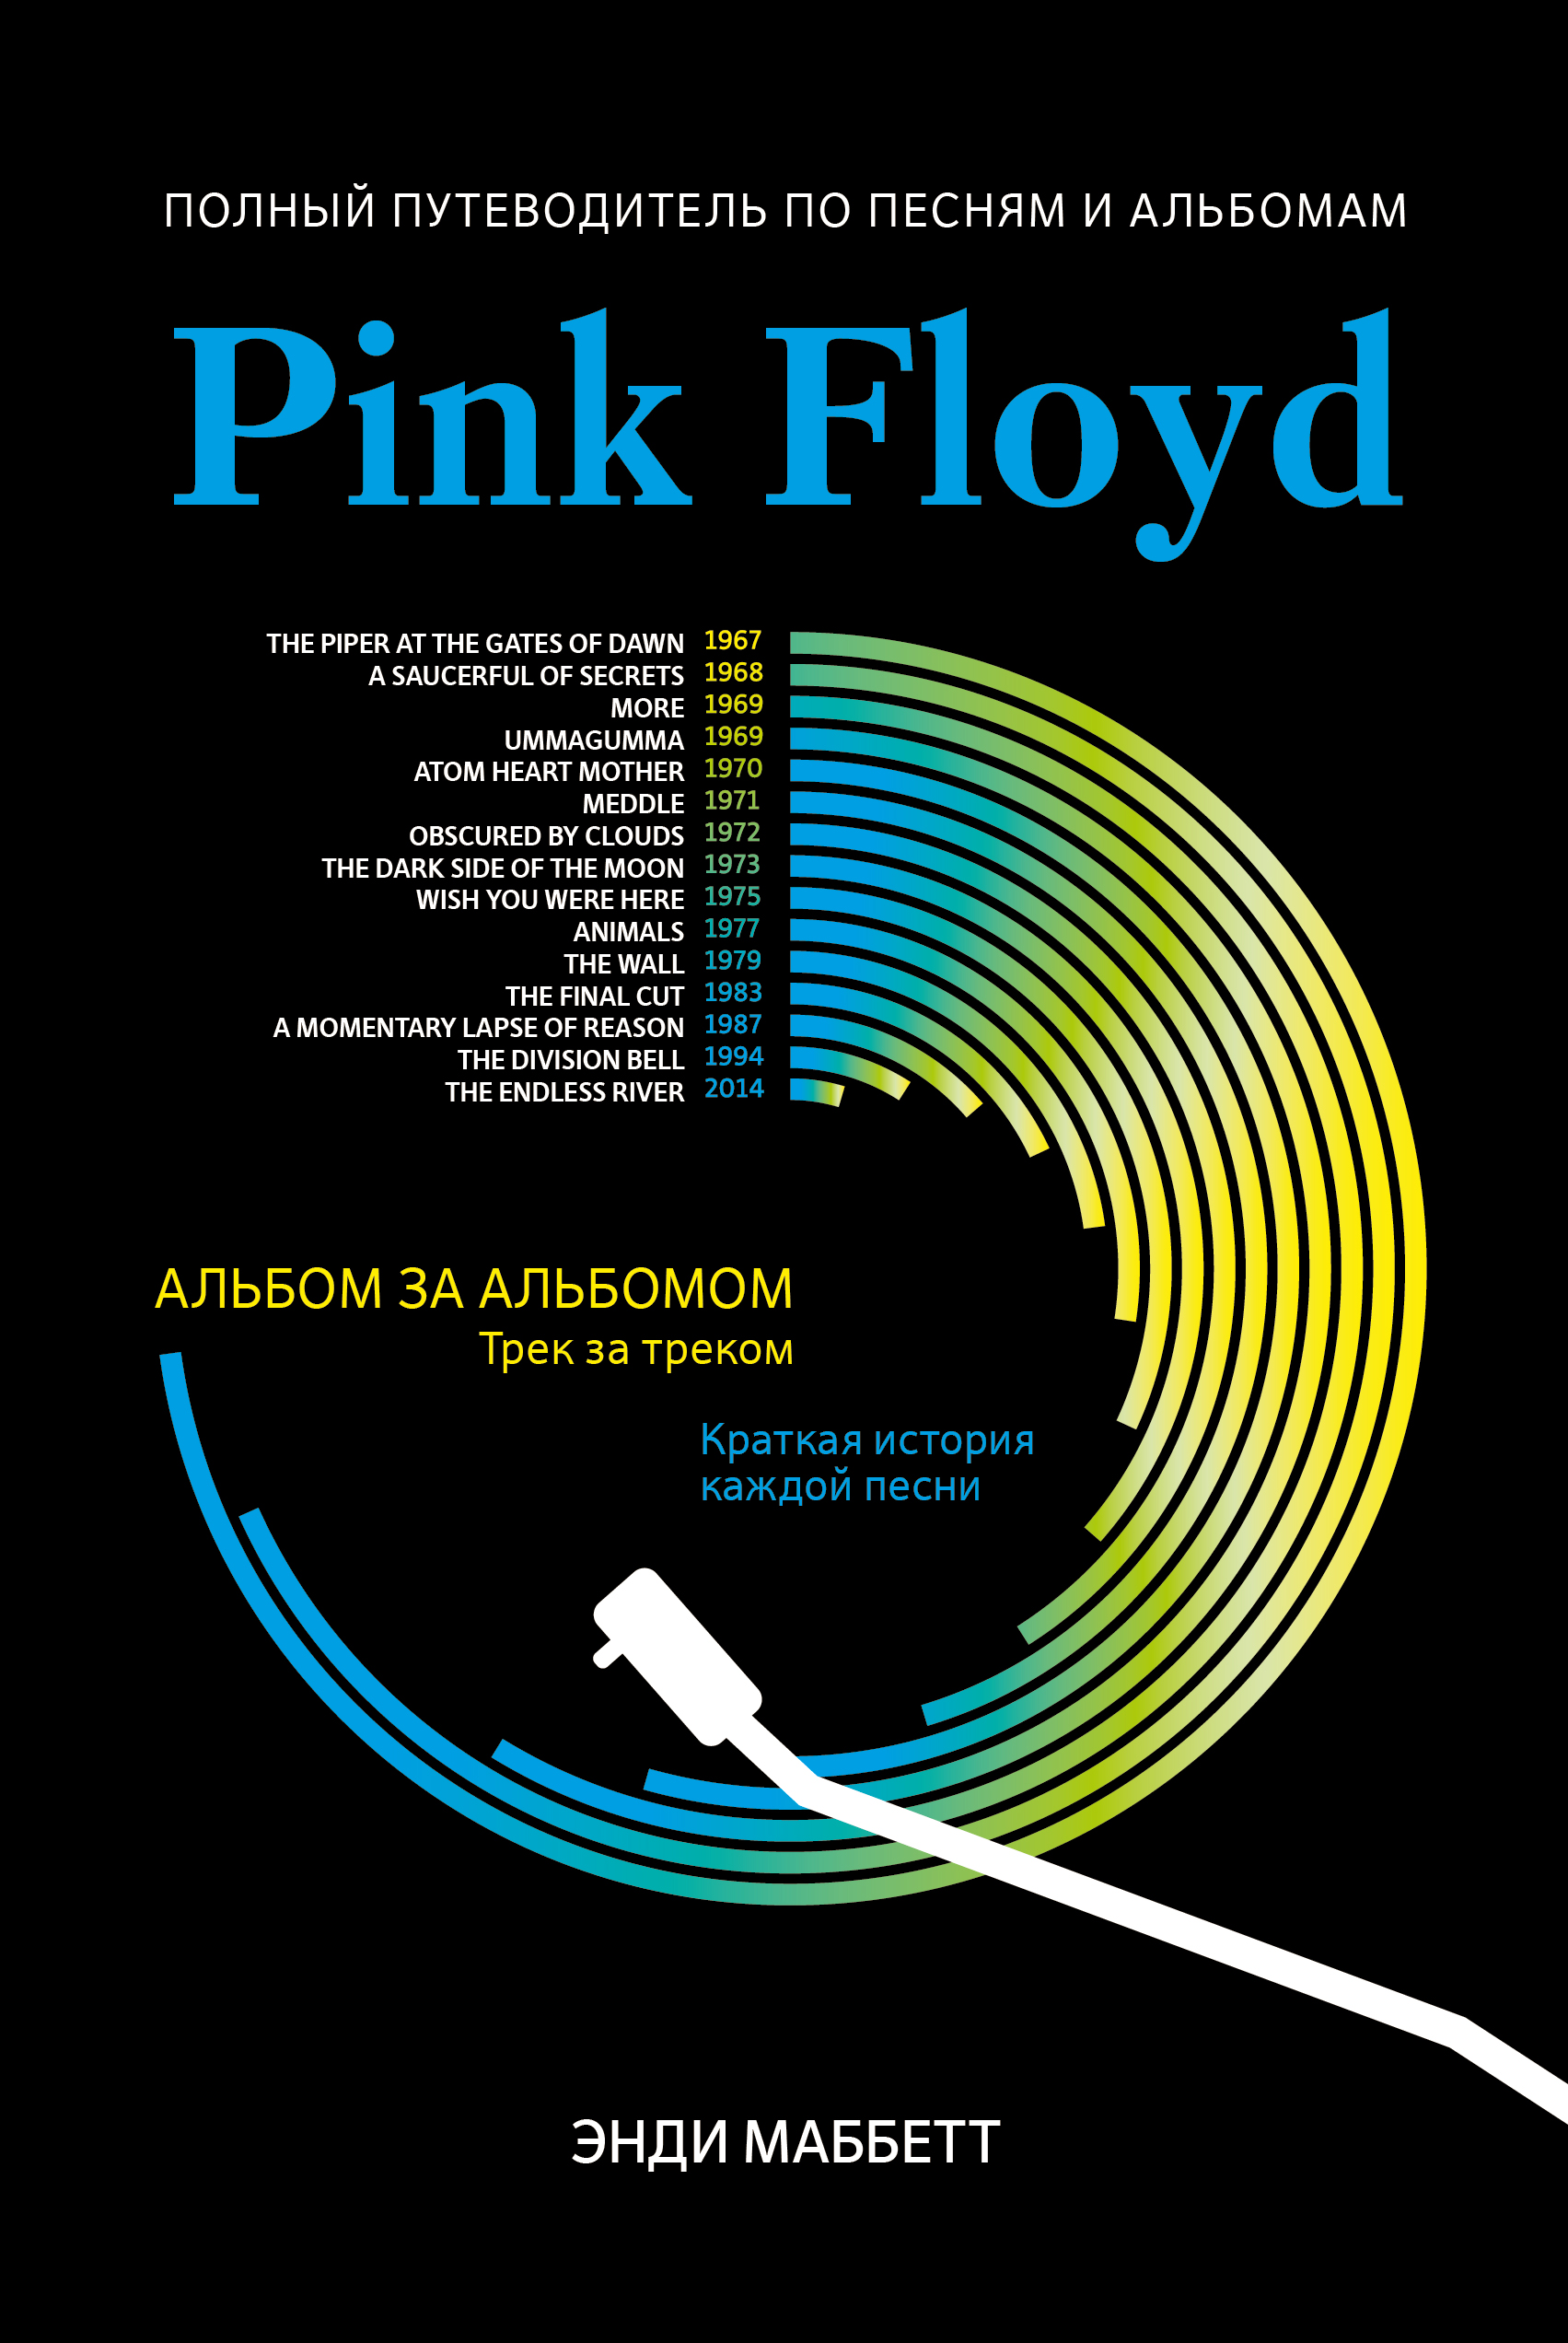 Маббетт Энди - Pink Floyd: полный путеводитель по песням и альбомам